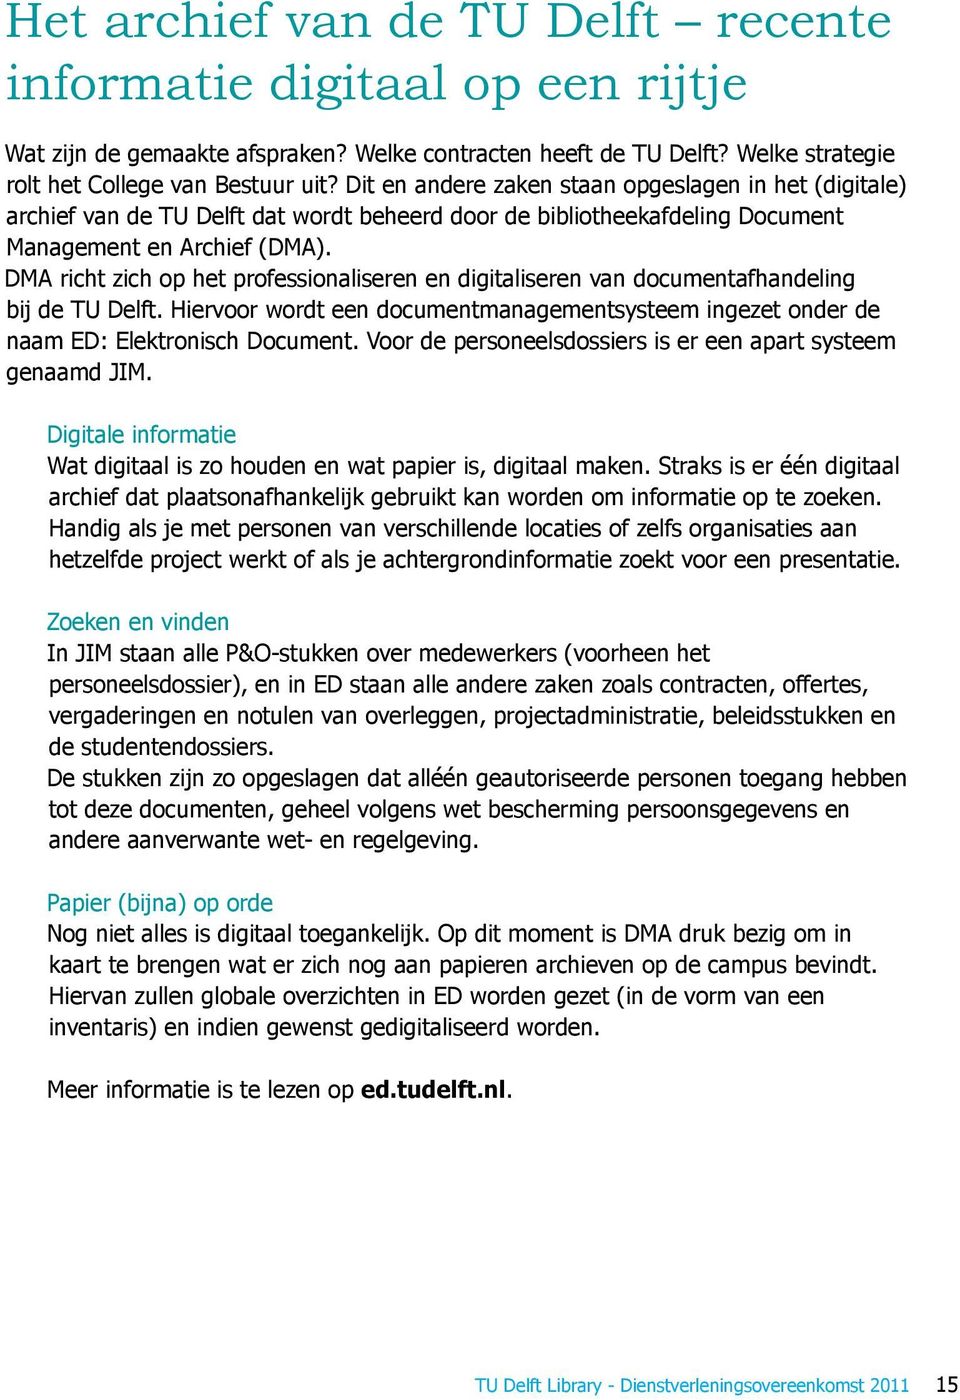 DMA richt zich op het professionaliseren en digitaliseren van documentafhandeling bij de TU Delft. Hiervoor wordt een documentmanagementsysteem ingezet onder de naam ED: Elektronisch Document.